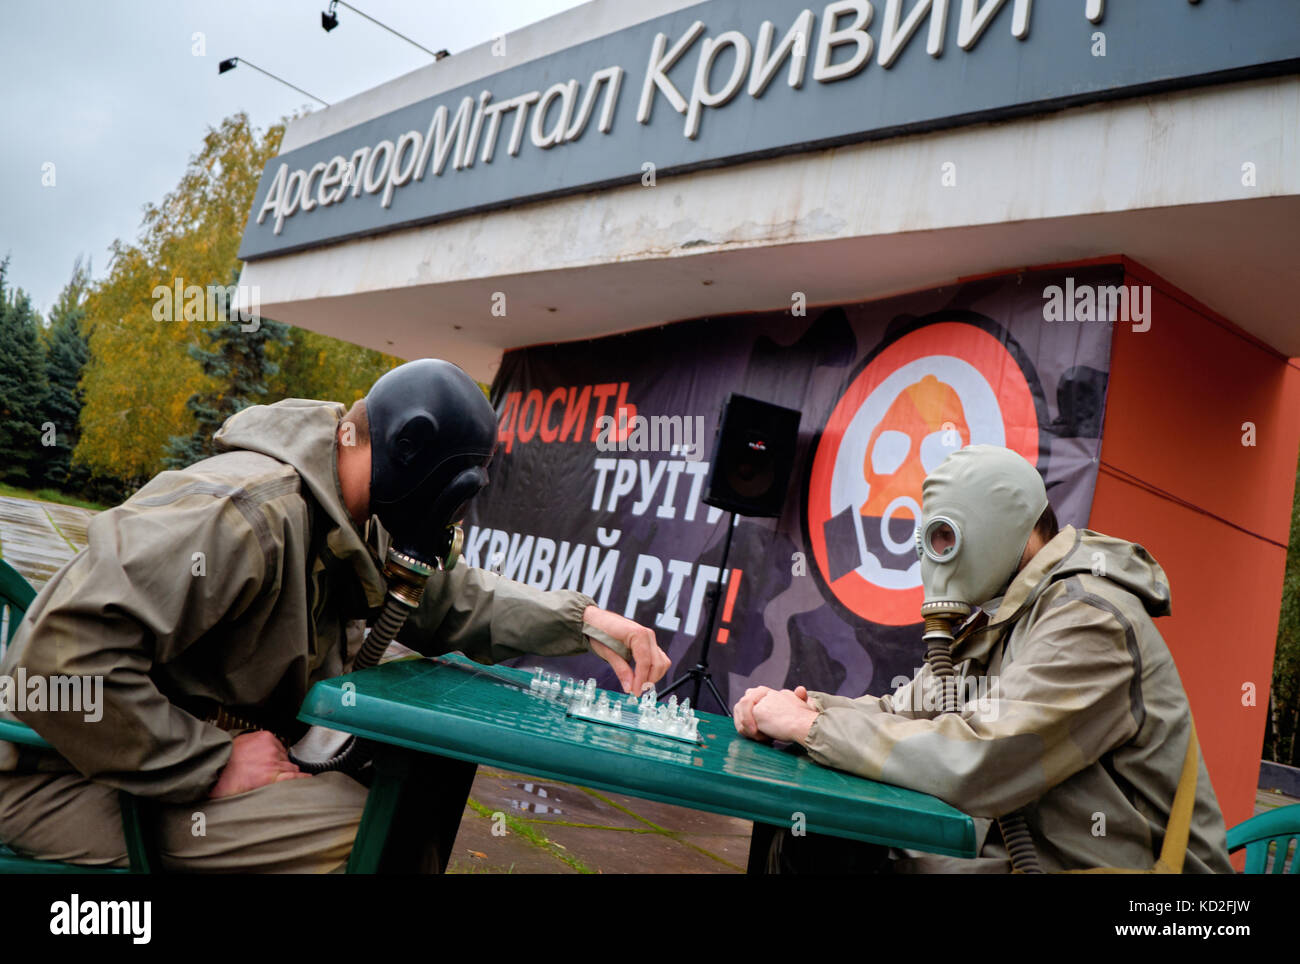 Kryvyi rih, Ucrania - Octubre 9, 2017: dos hombres con máscaras de gas en las caras jugar ajedrez cerca de arcelormittal kryvyi rih pjsc monumento marca en reunión de la protesta contra la contaminación del aire de crédito: dmytro aliokhin/alamy live news Foto de stock